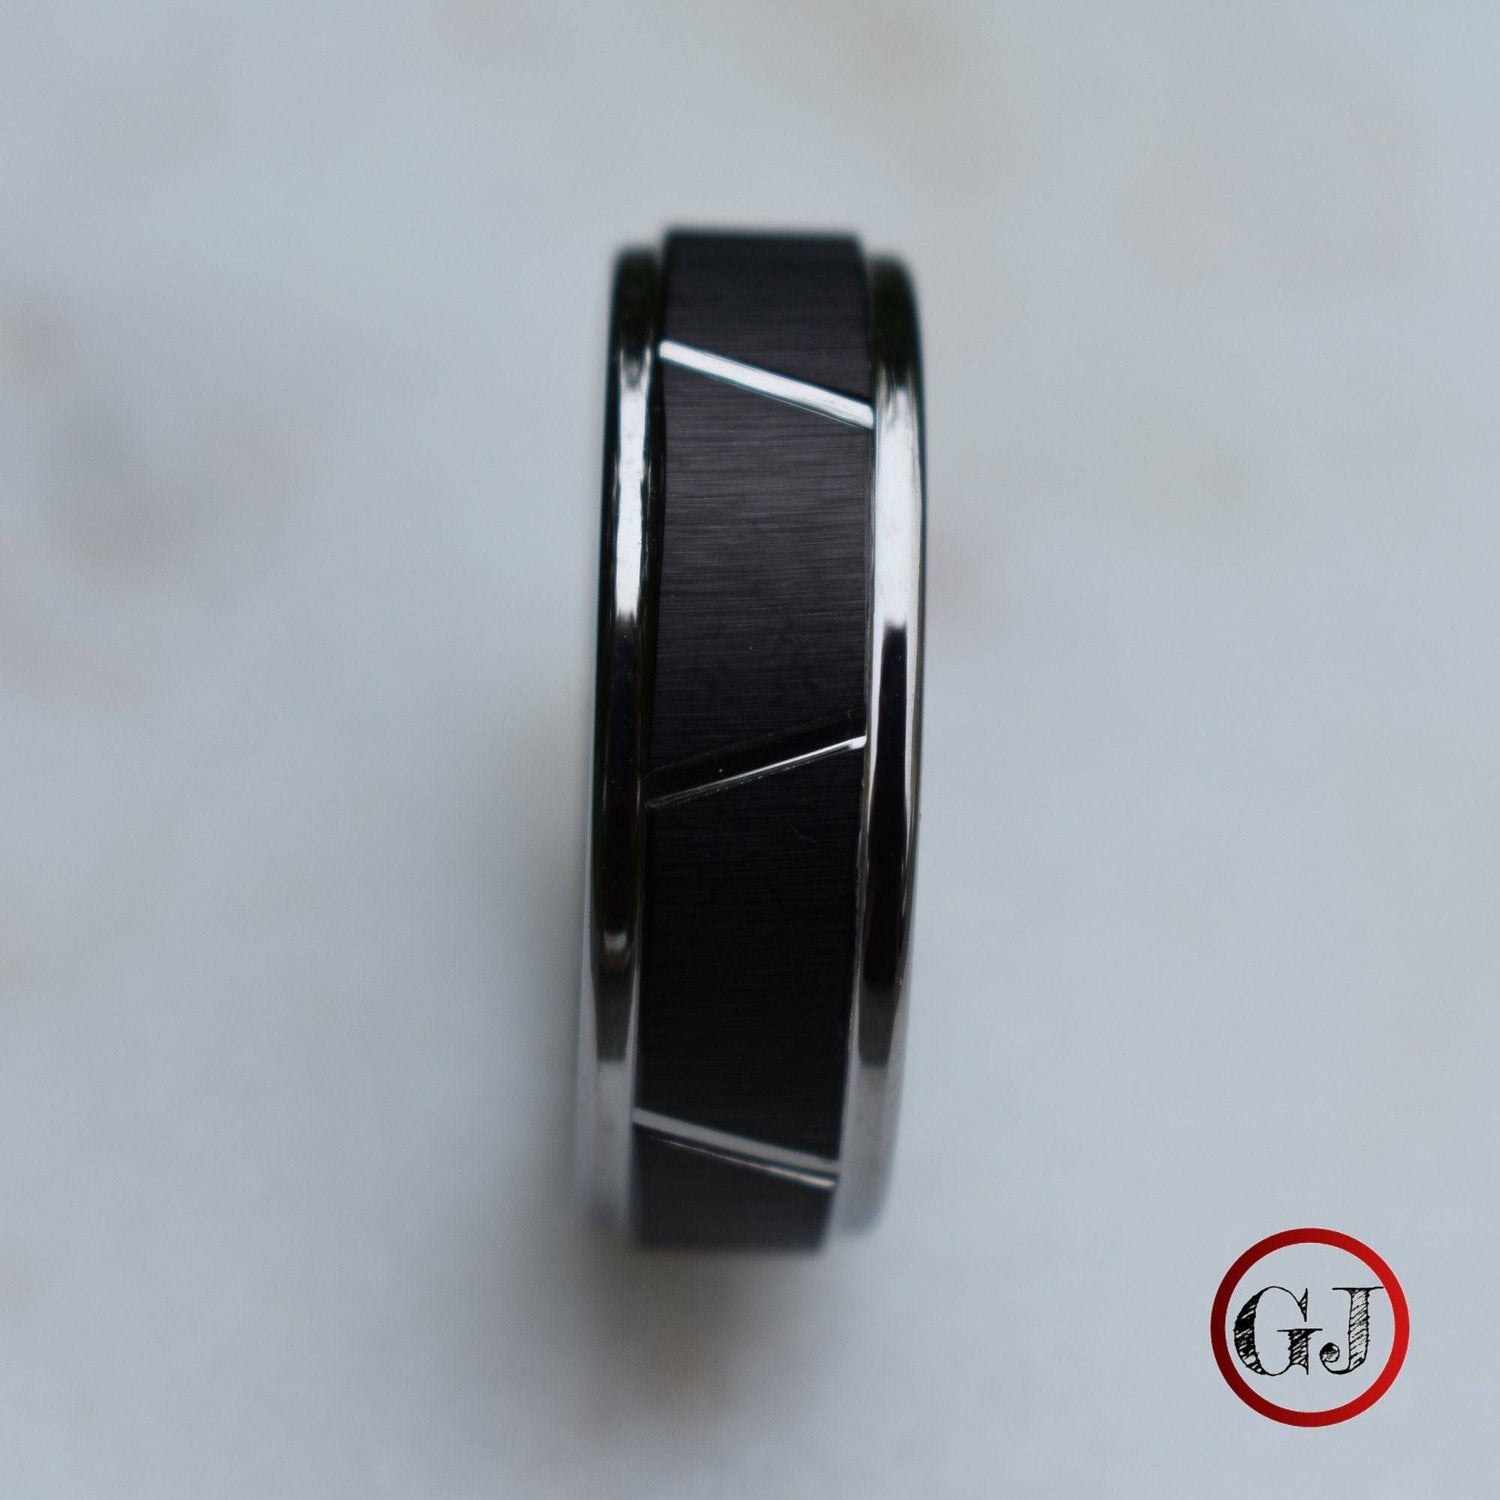 Tungsten 8mm Ring With Raised Black Center Design - Tungsten Titans